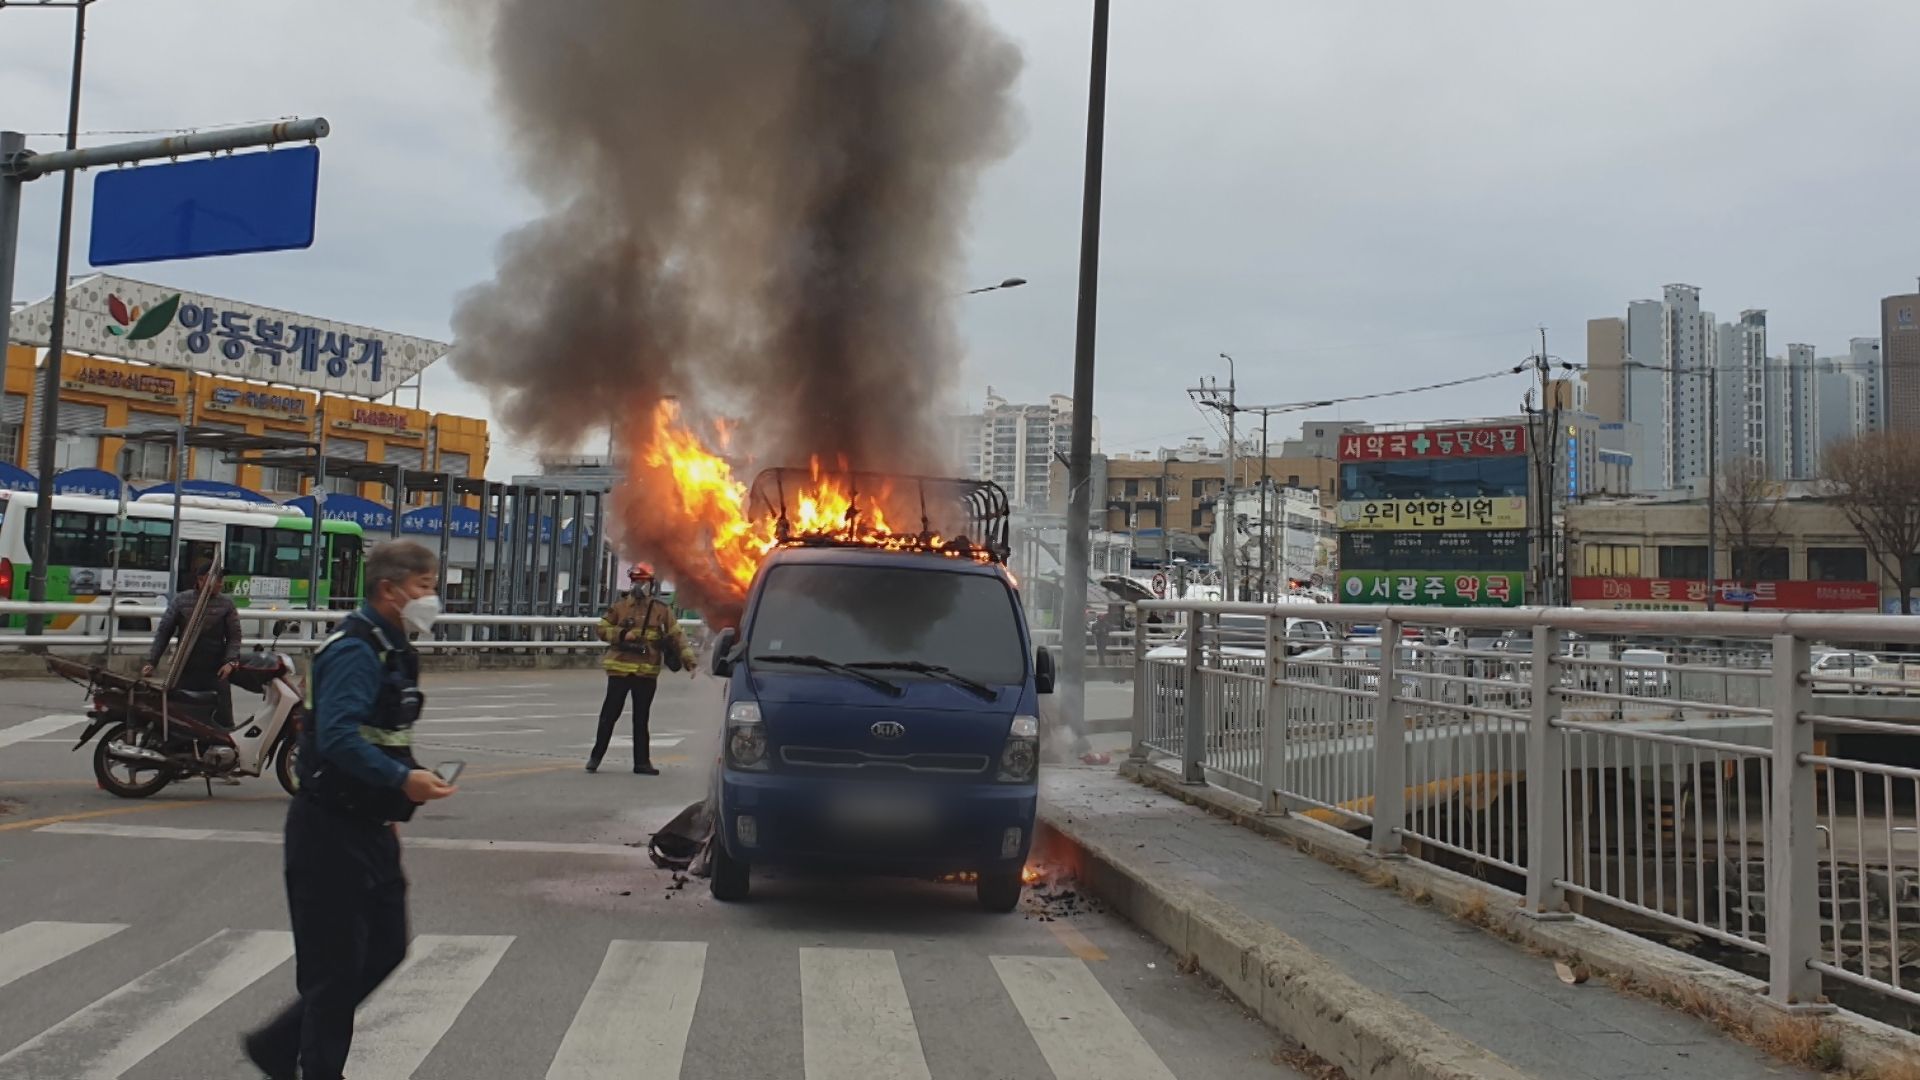 광주광역시 양동복개상가 앞. 주차된 화물차에서 불길이 치솟고 있다.